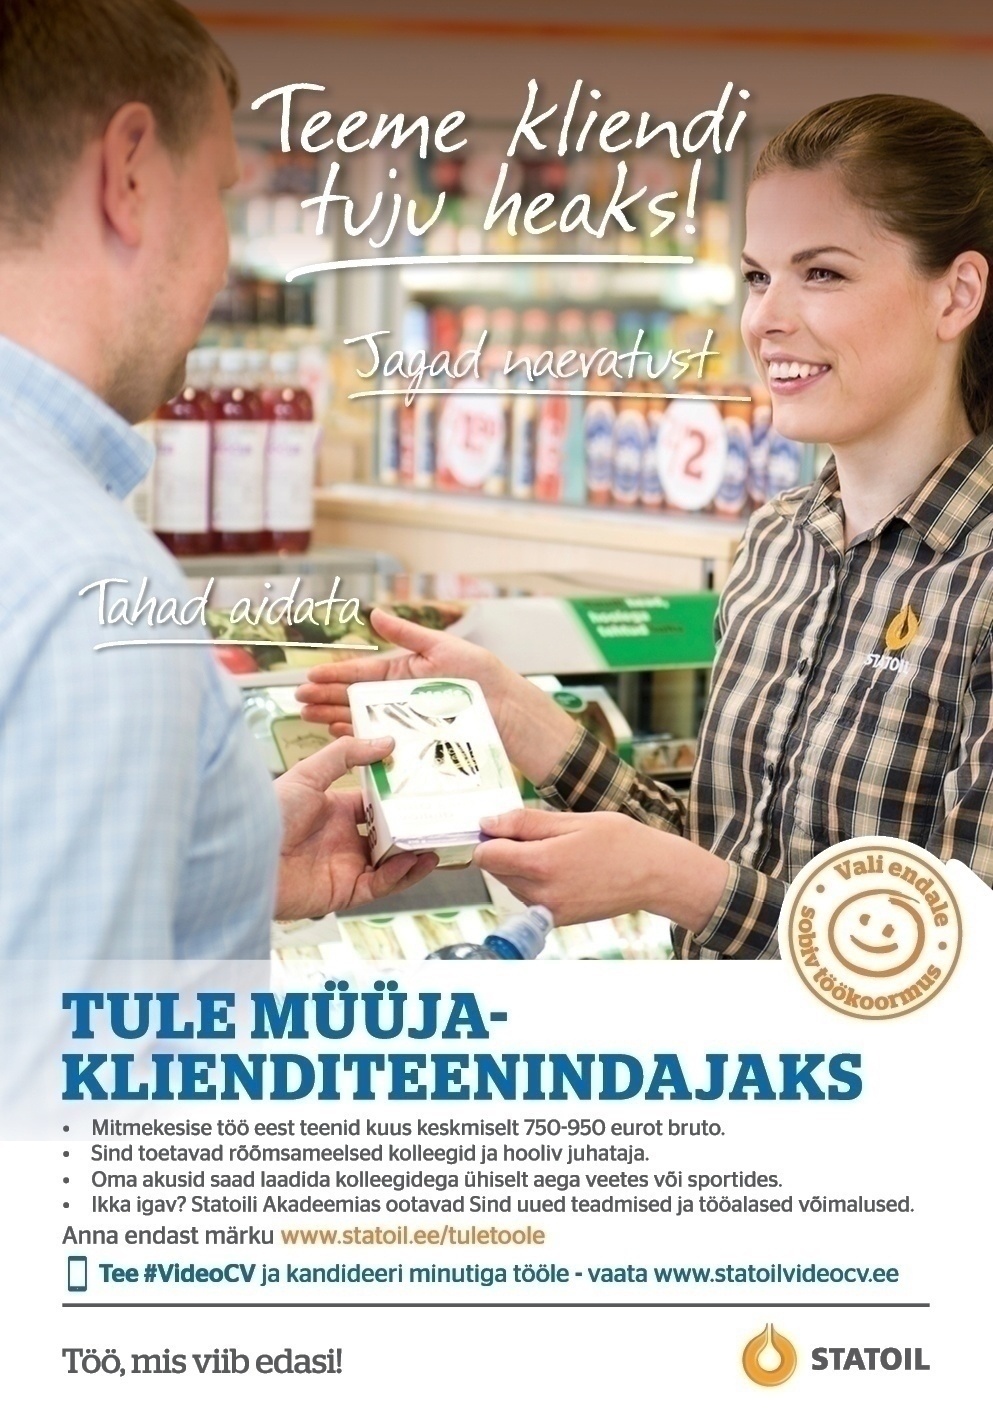 Circle K Eesti AS Müüja-klienditeenindaja Lääne-Tallinna (Kristiine, Mustamäe, Nõmme, Laagri ja Haabersti) piirkondades